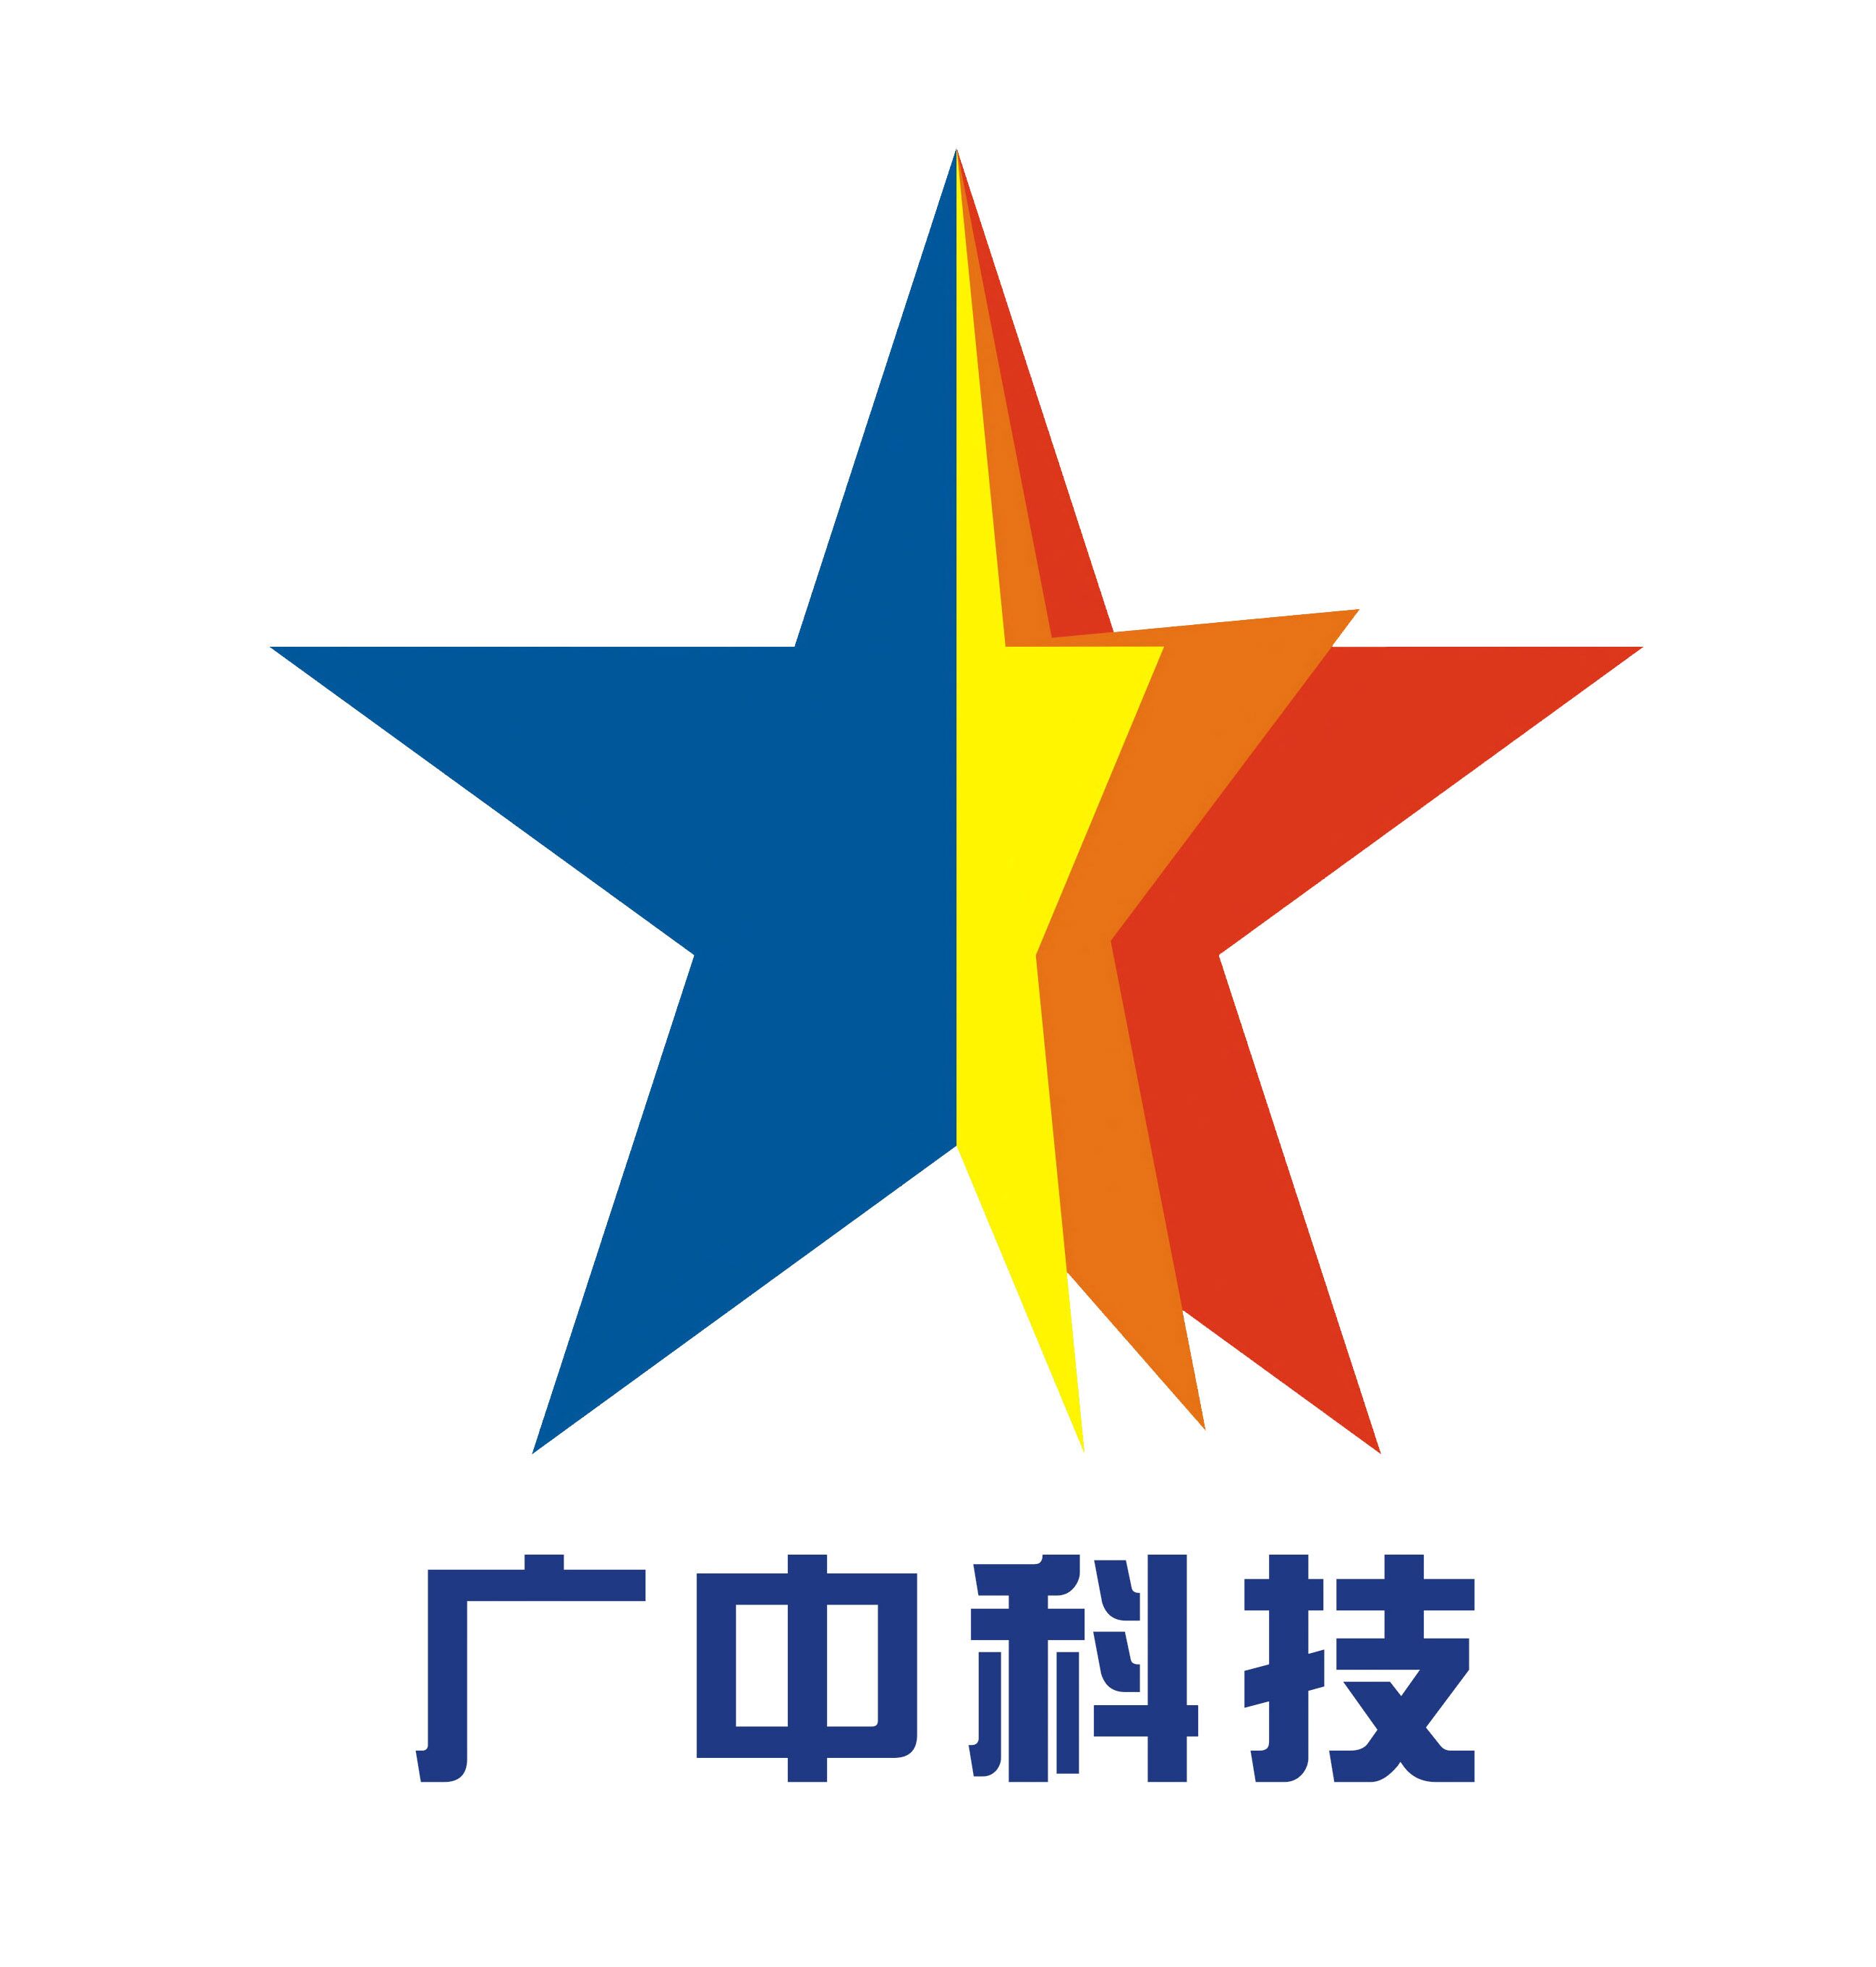 广州中医药大学科技产业园有限公司